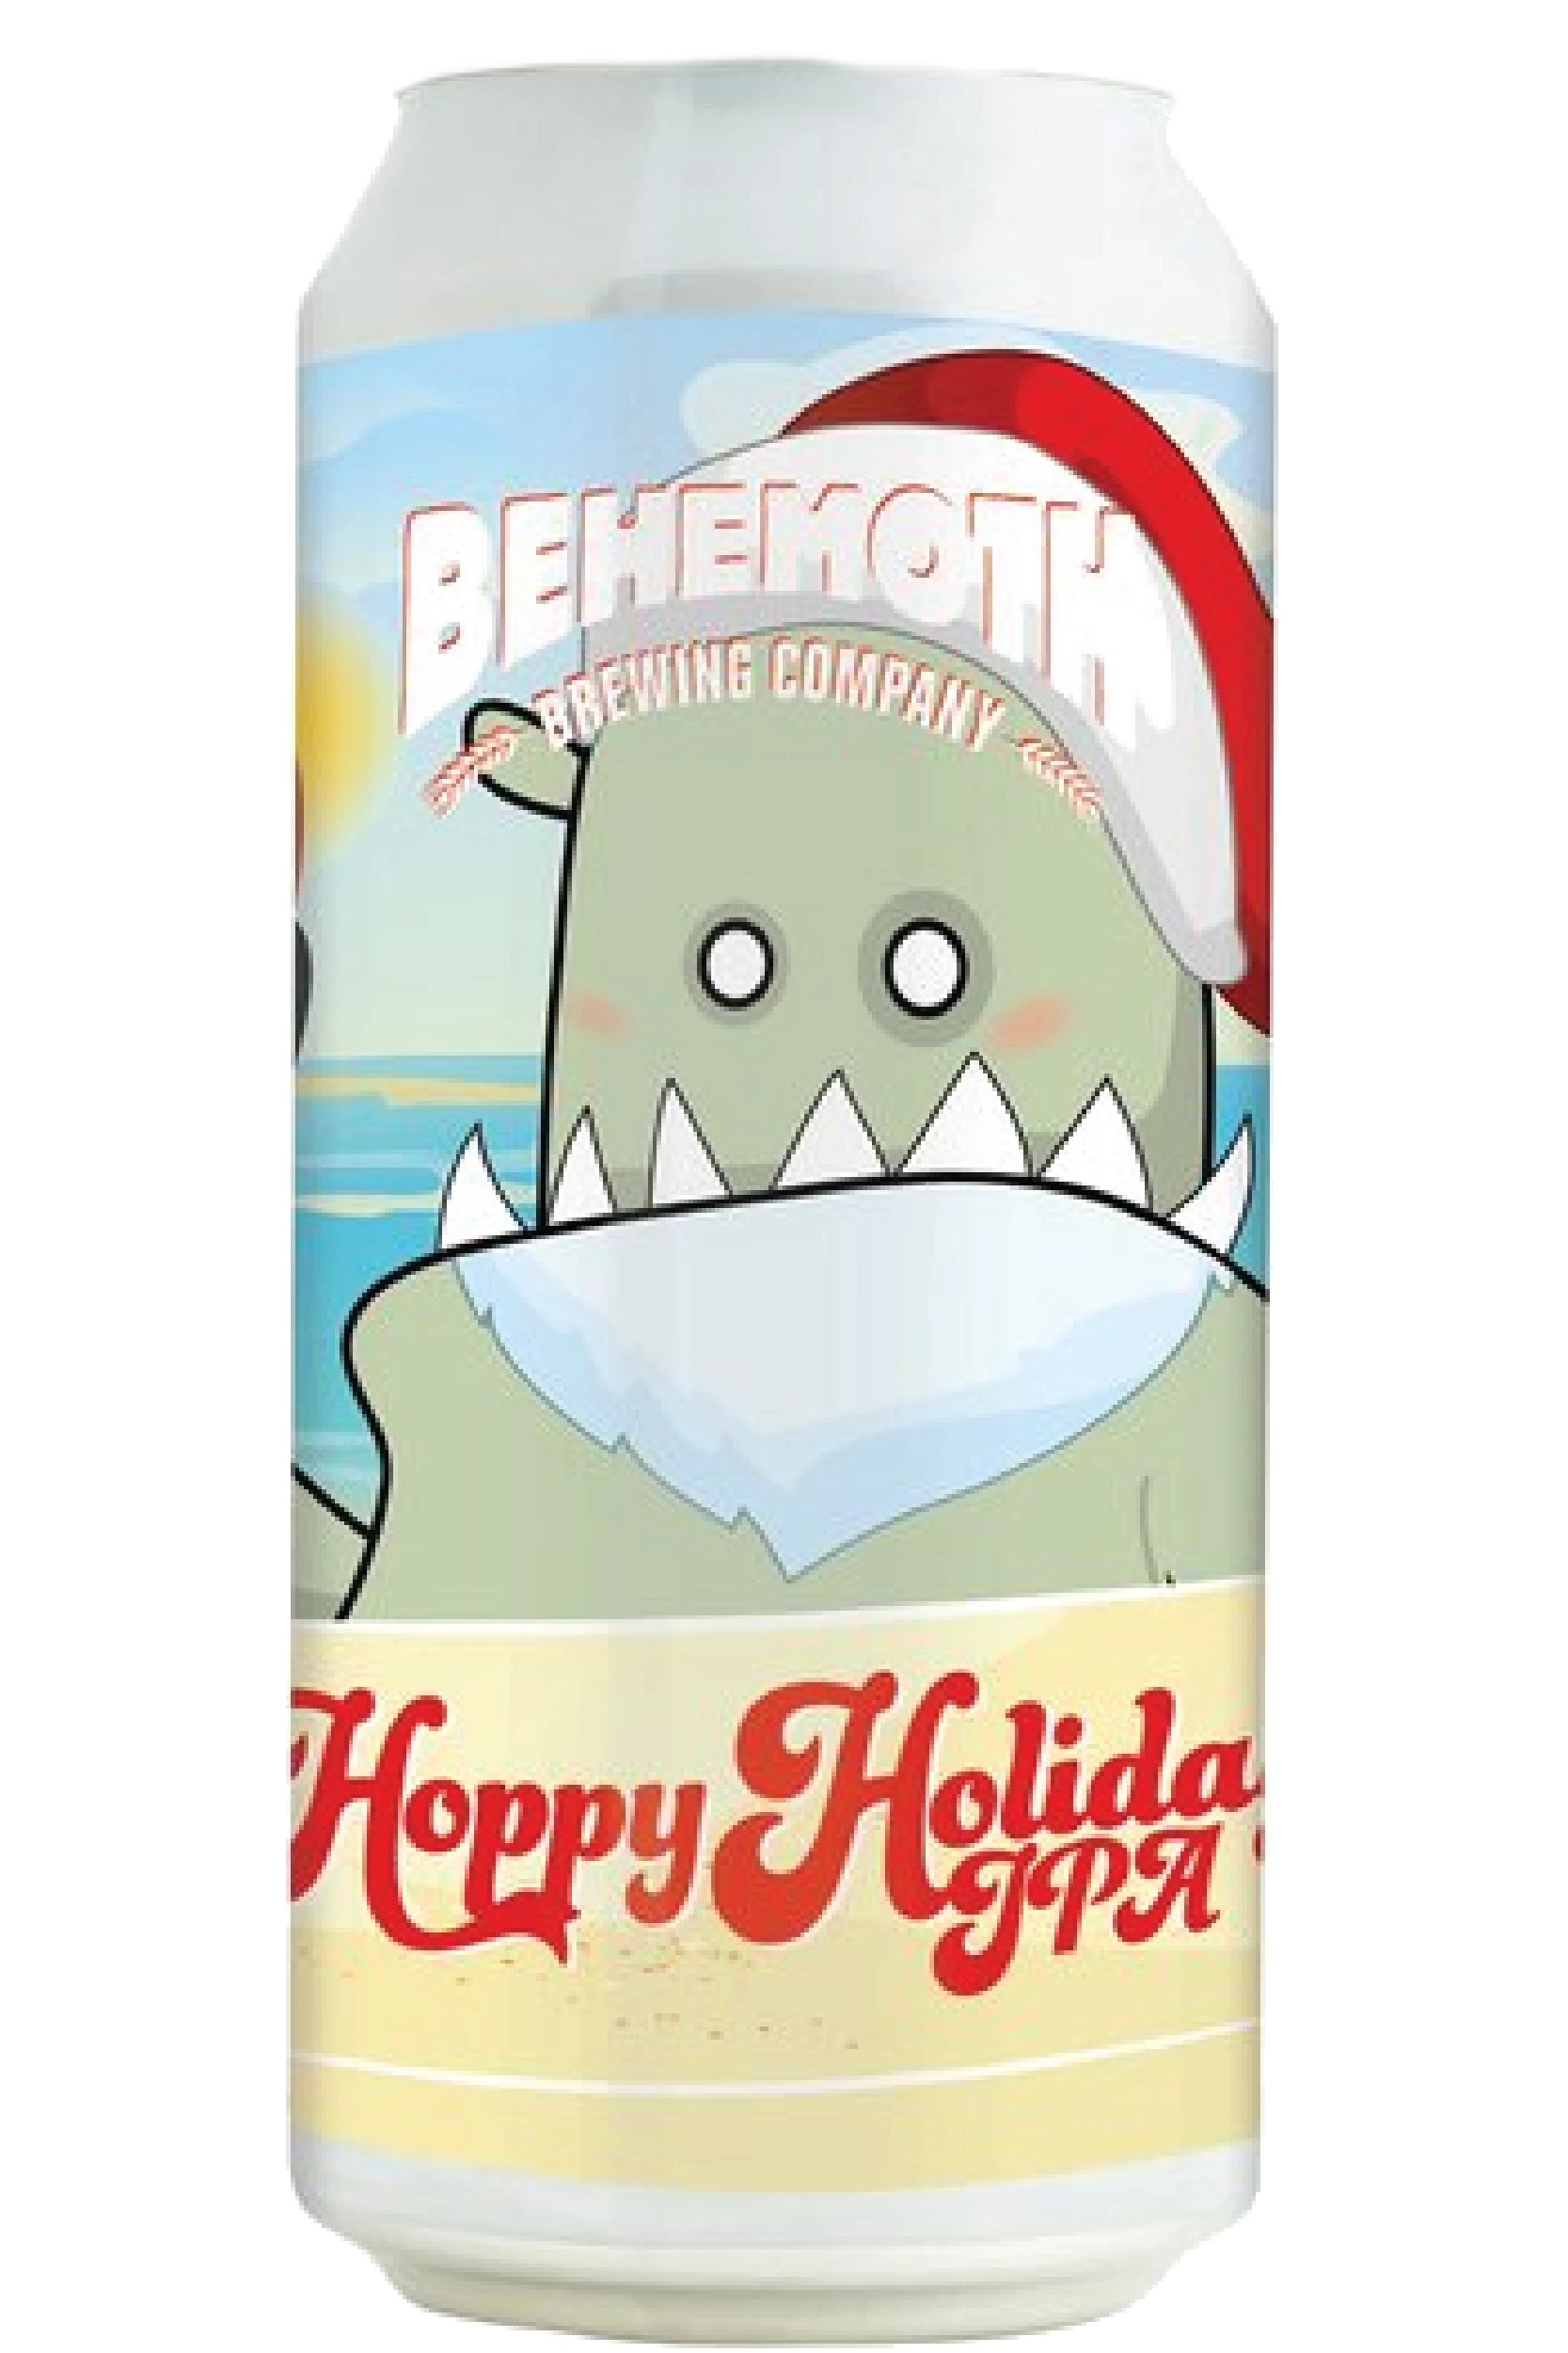 Produktbild von Behemoth Hoppy holidays ipa